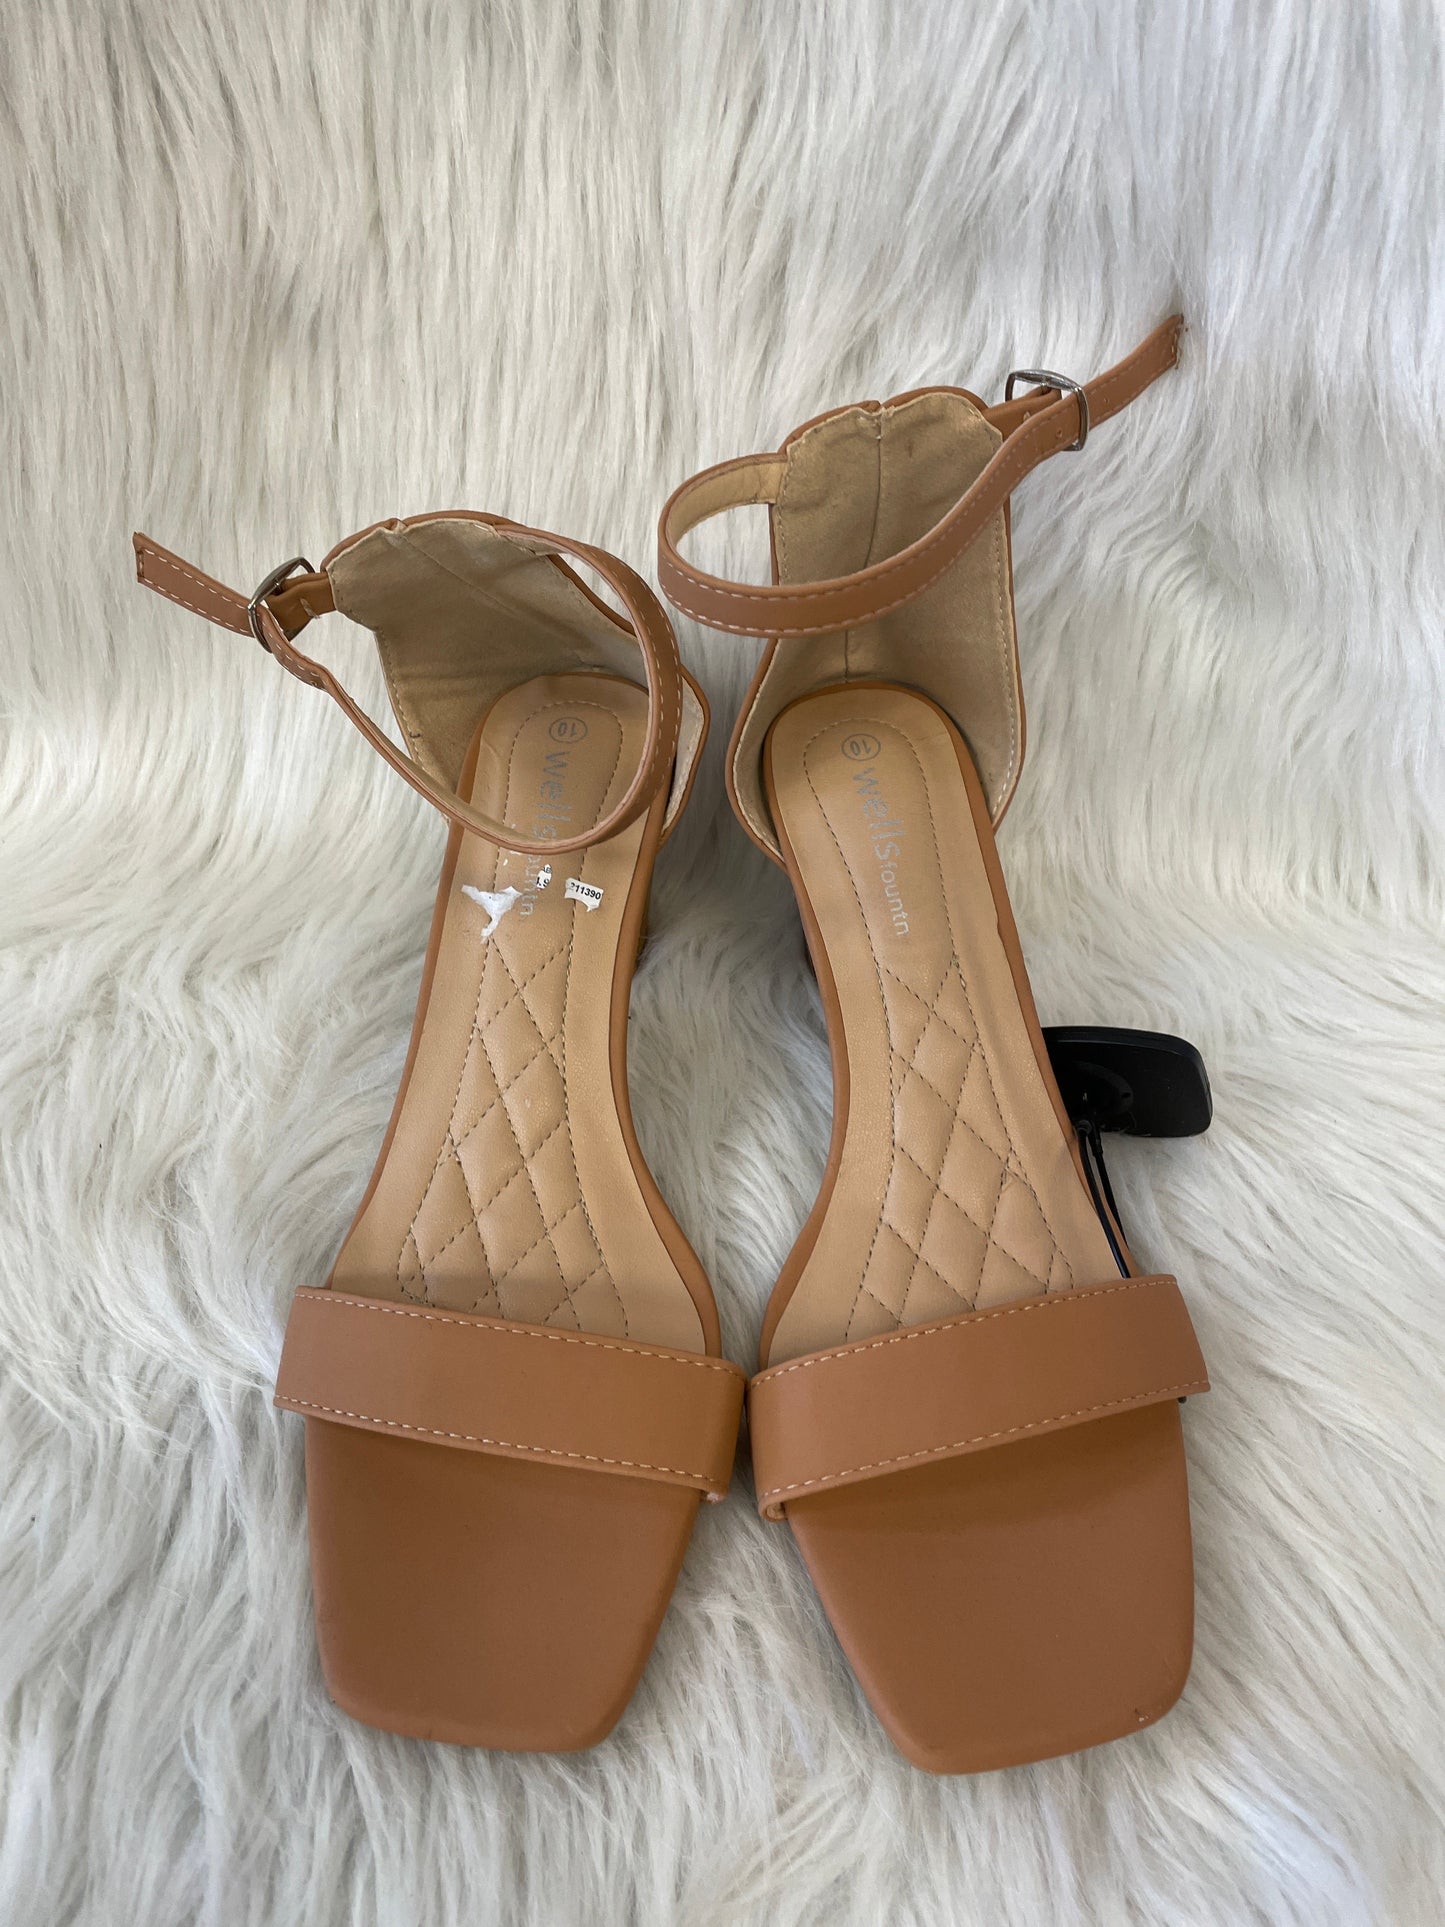 Tan Sandals Heels Block Cme, Size 10